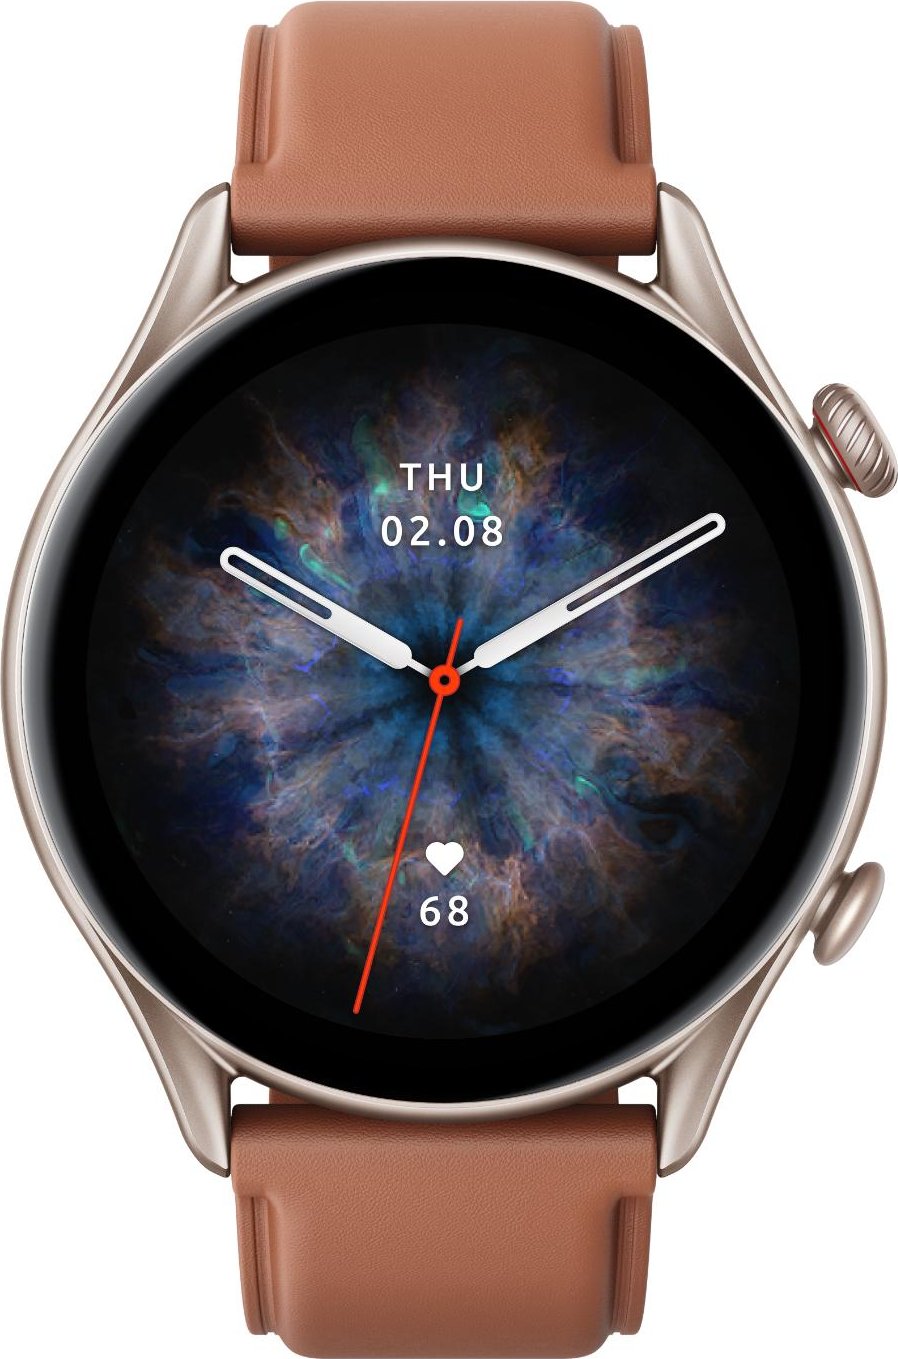 Reloj Deportivo Con Gps Garmin Forerunner 245 Pantalla Color 3.04cm Sensor  Frecuencia Cardiaca Pulsioxime